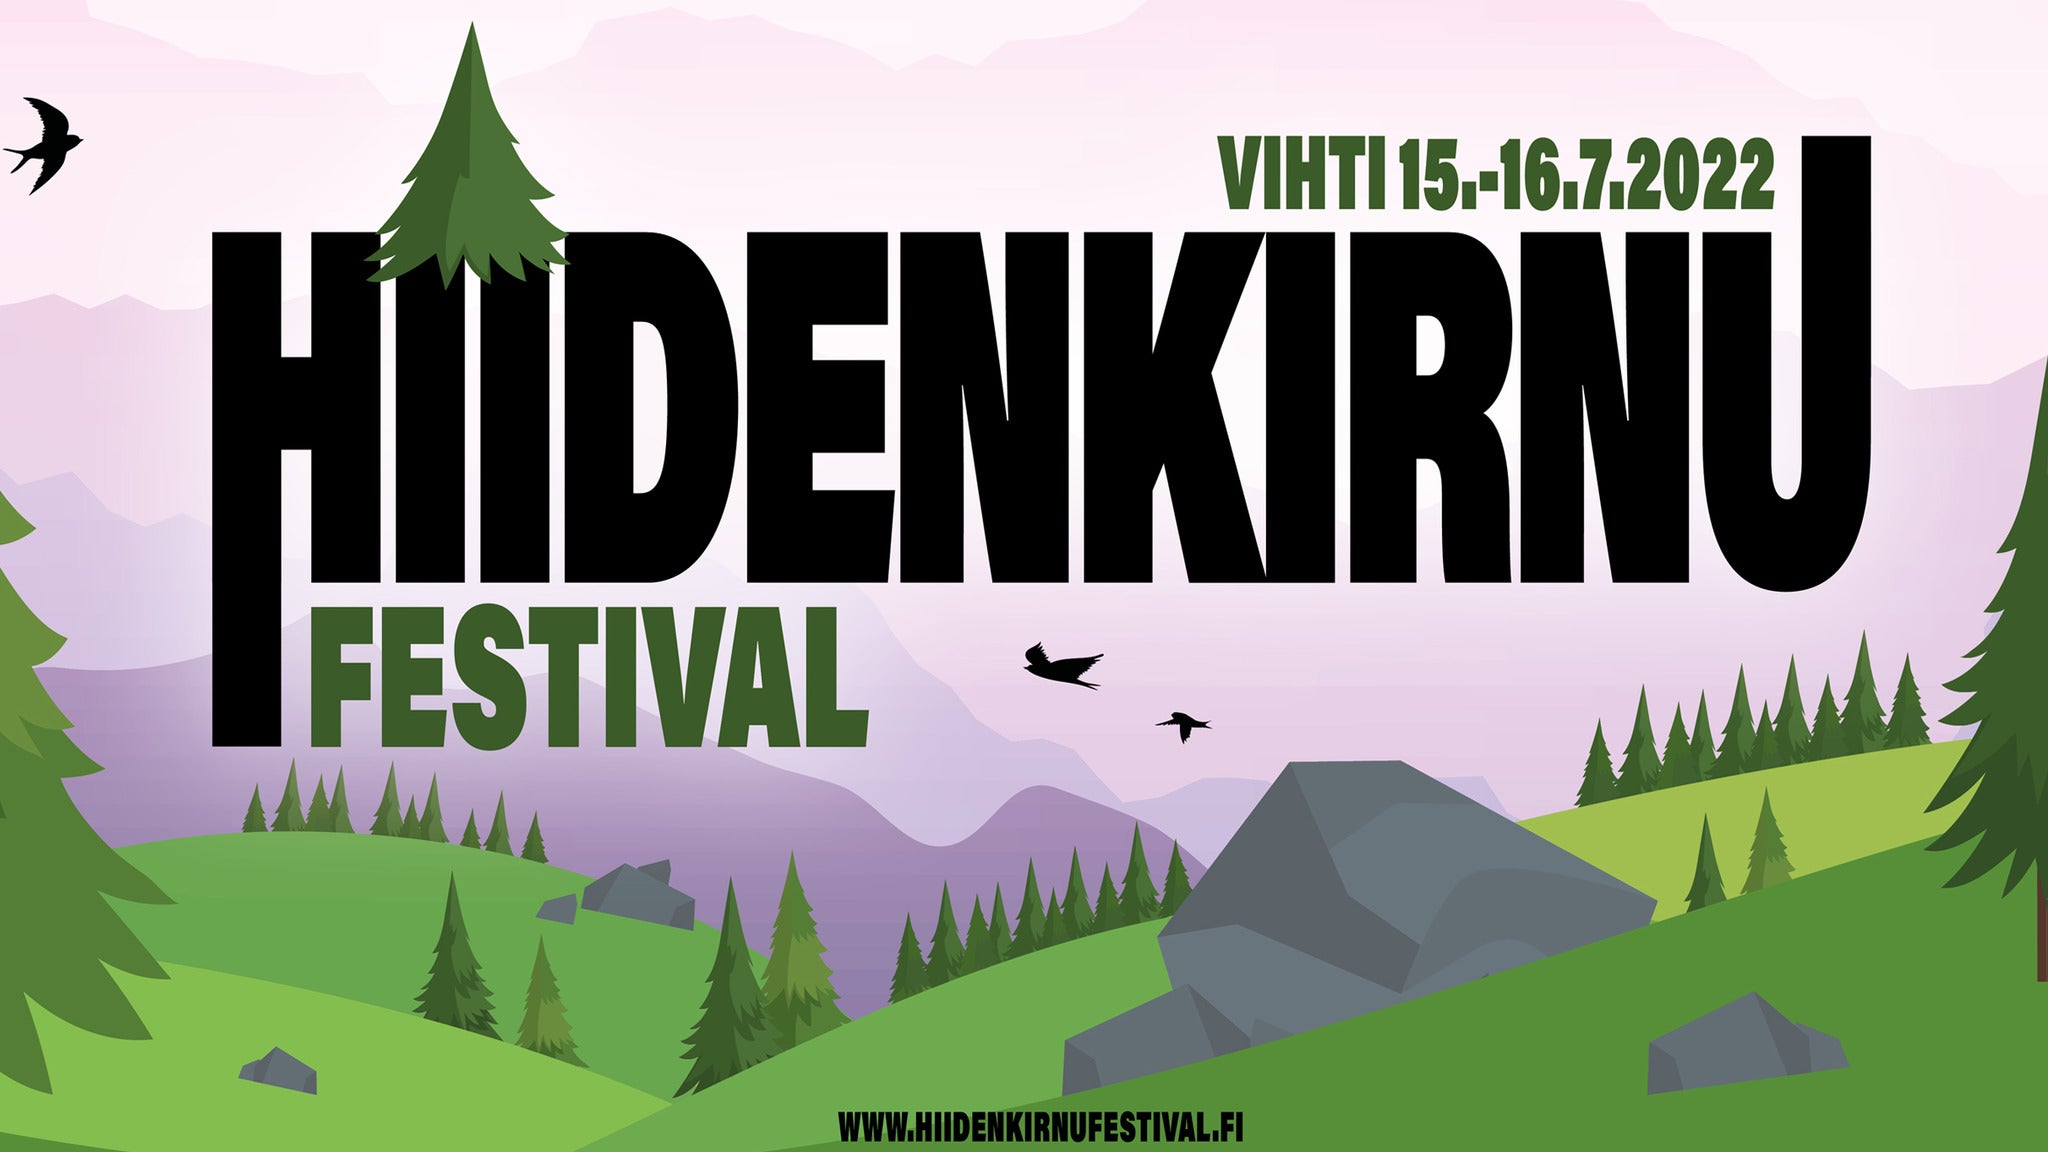 Hiidenkirnu Festival 2022: 2 days ticket